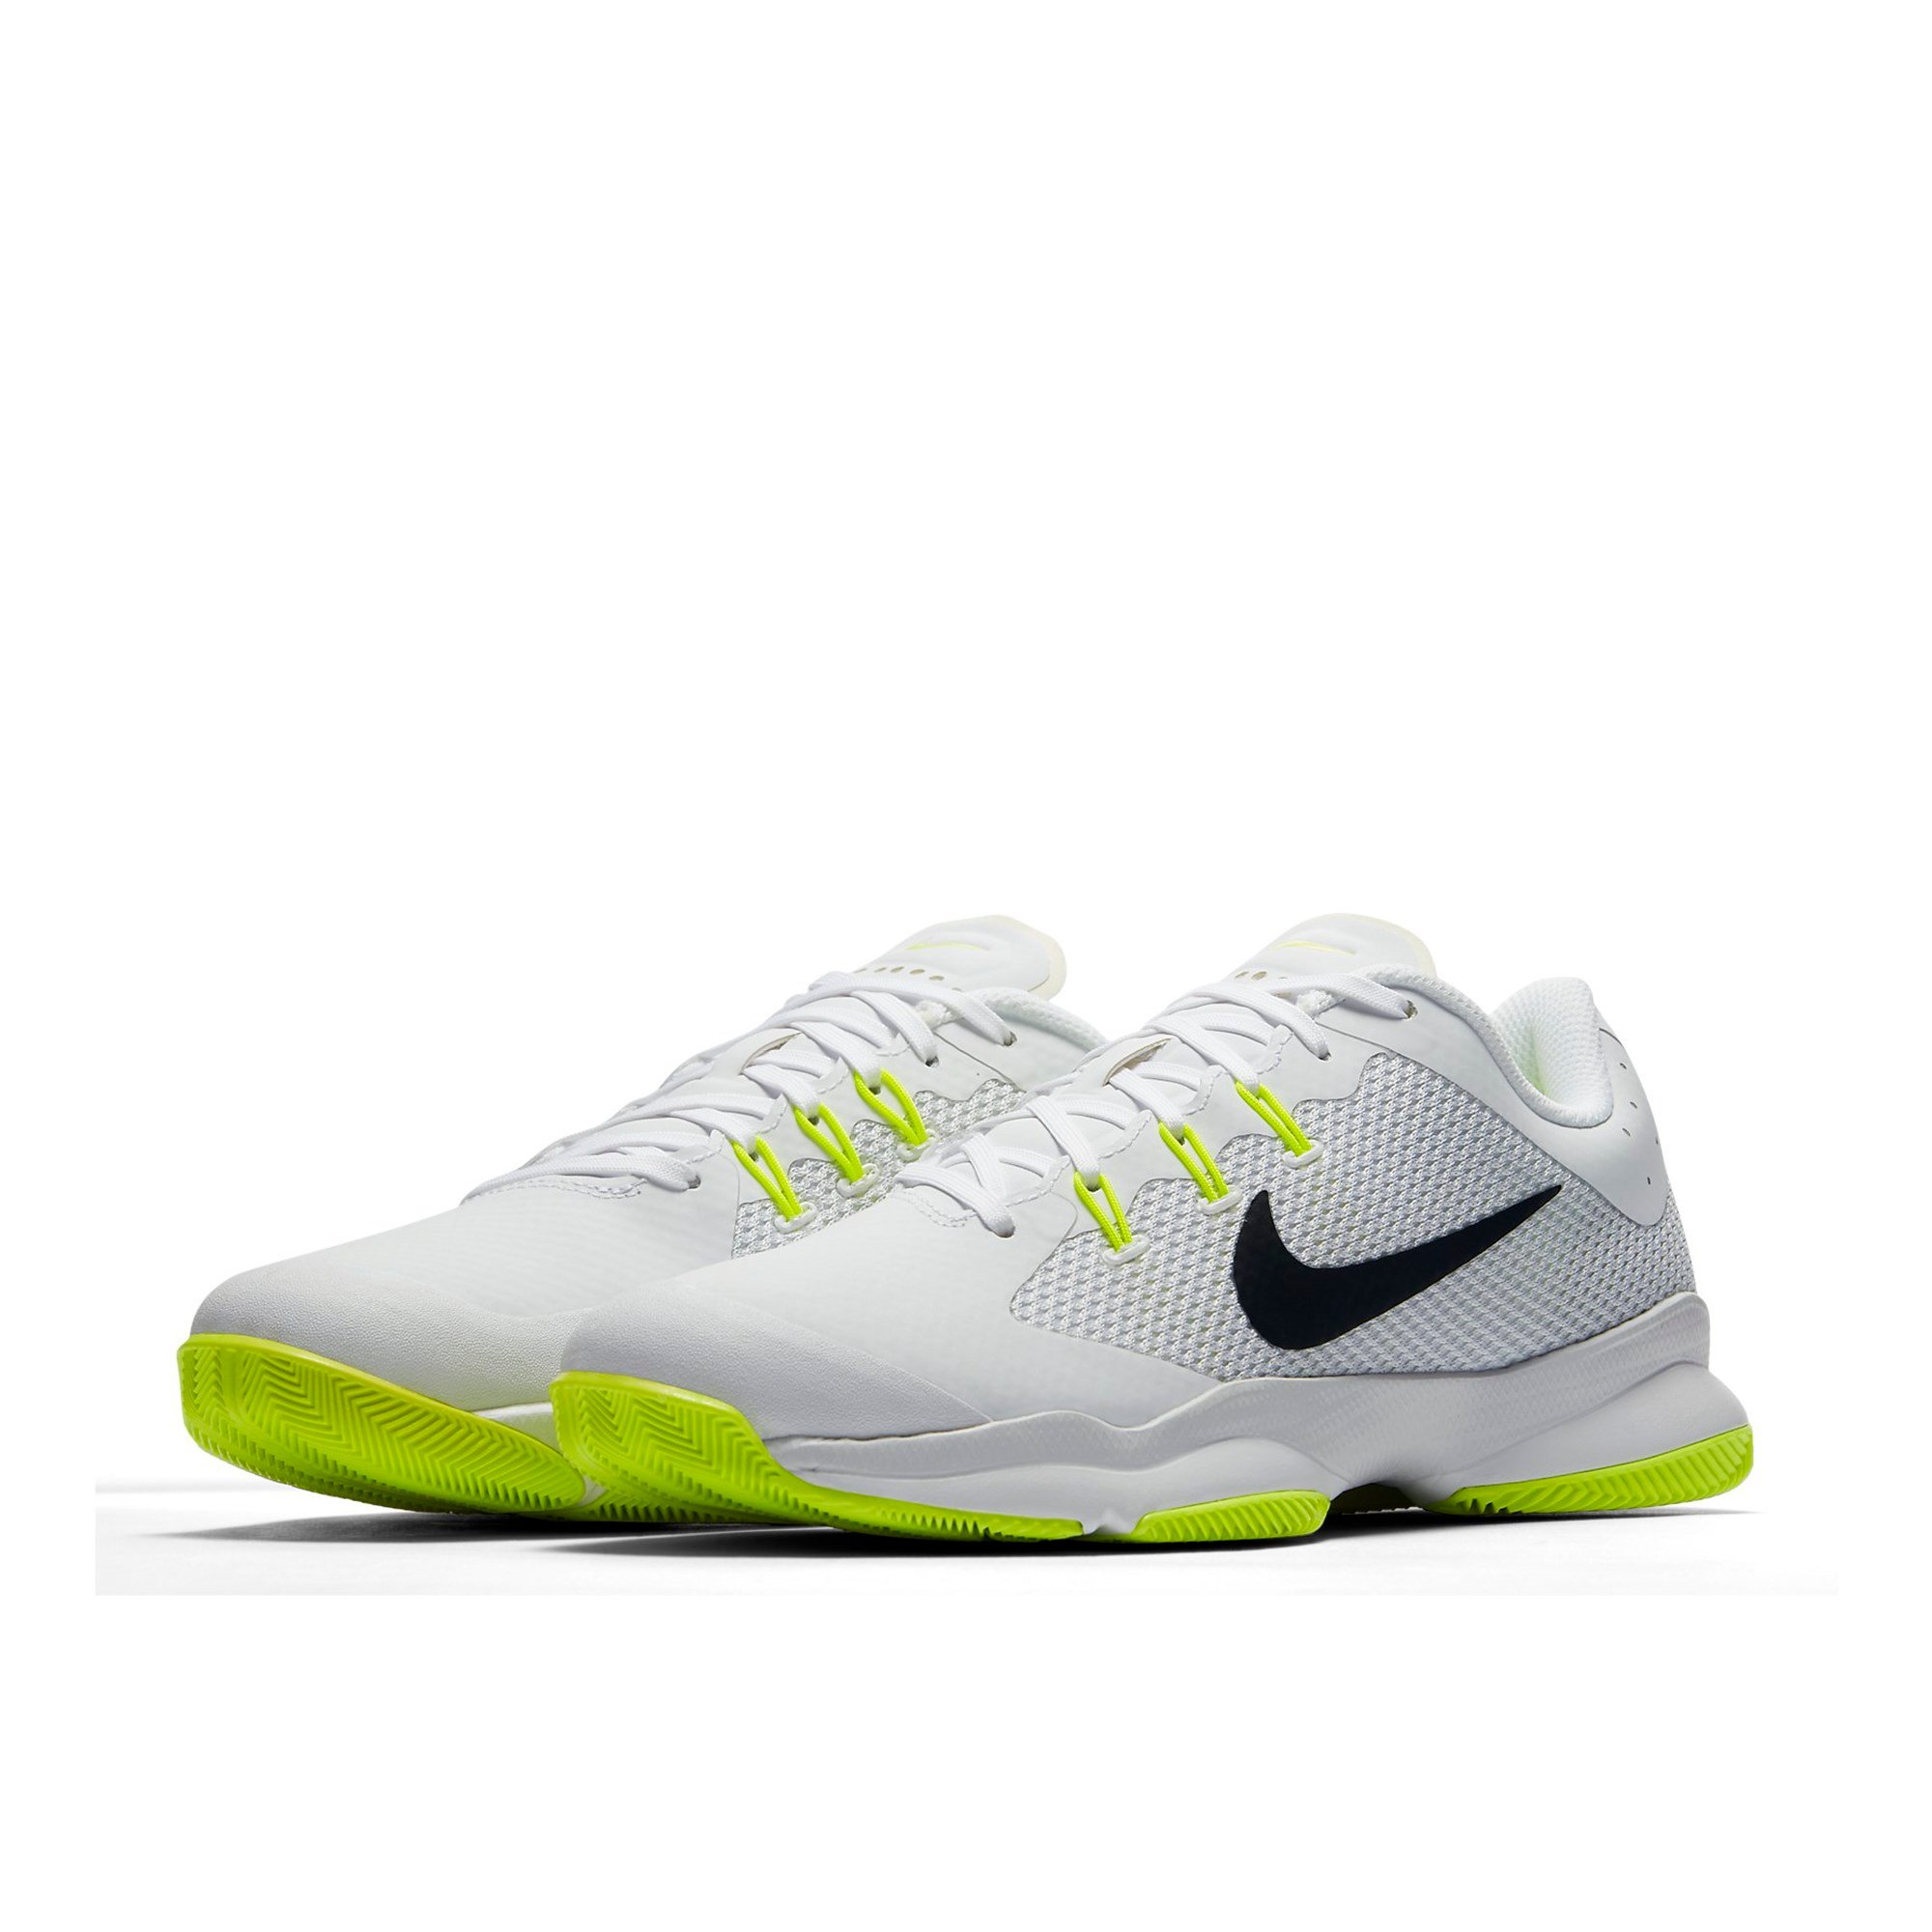 Nike Air Zoom Ultra Tennis Shoe Erkek Spor Ayakkabı Ürün kodu: 845046-101 |  Etichet Sport